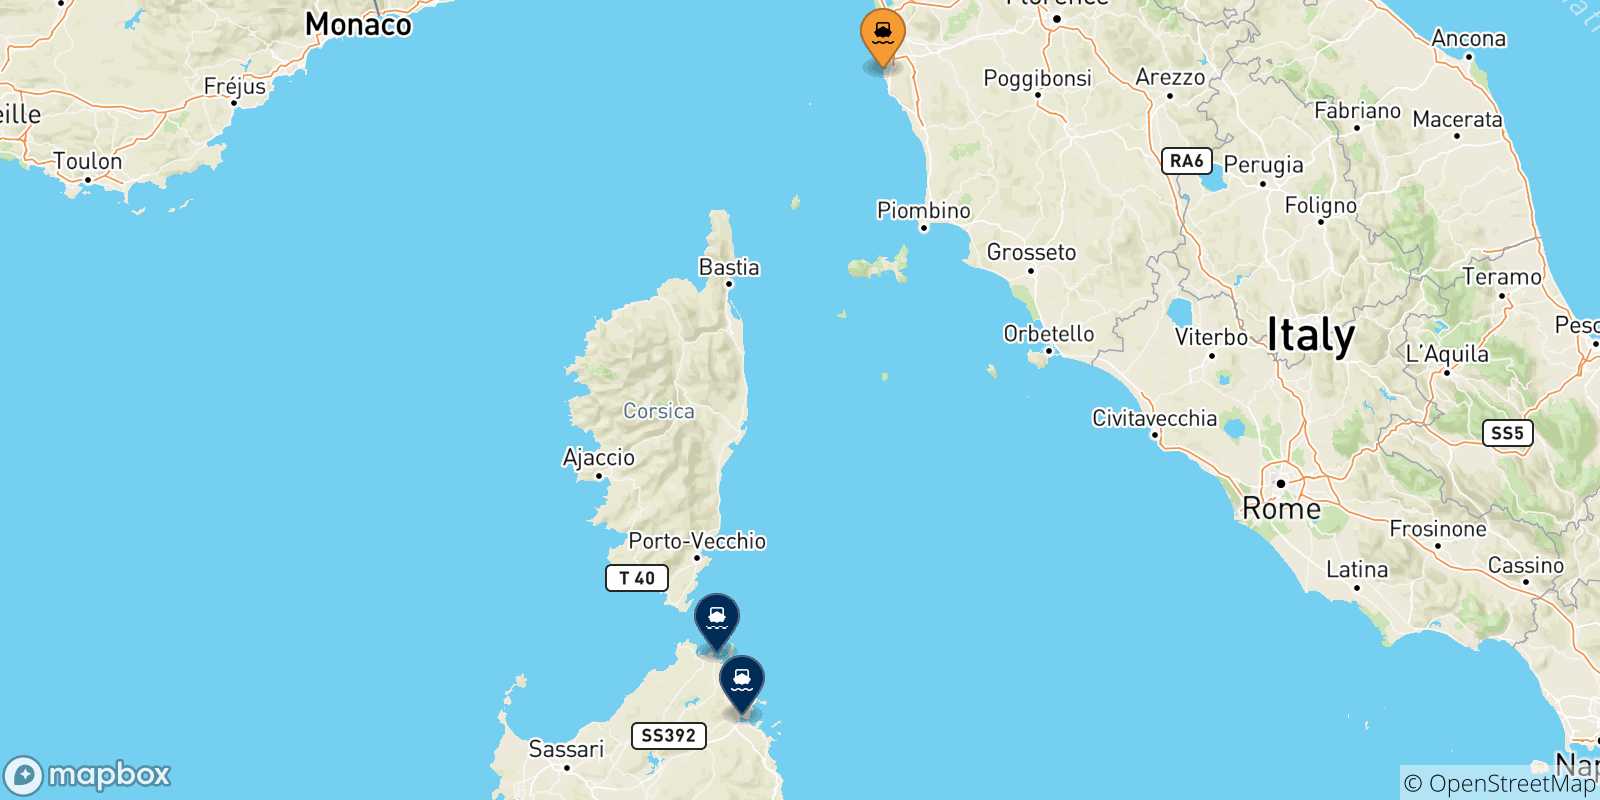 Mappa delle possibili rotte tra Livorno e la Sardegna